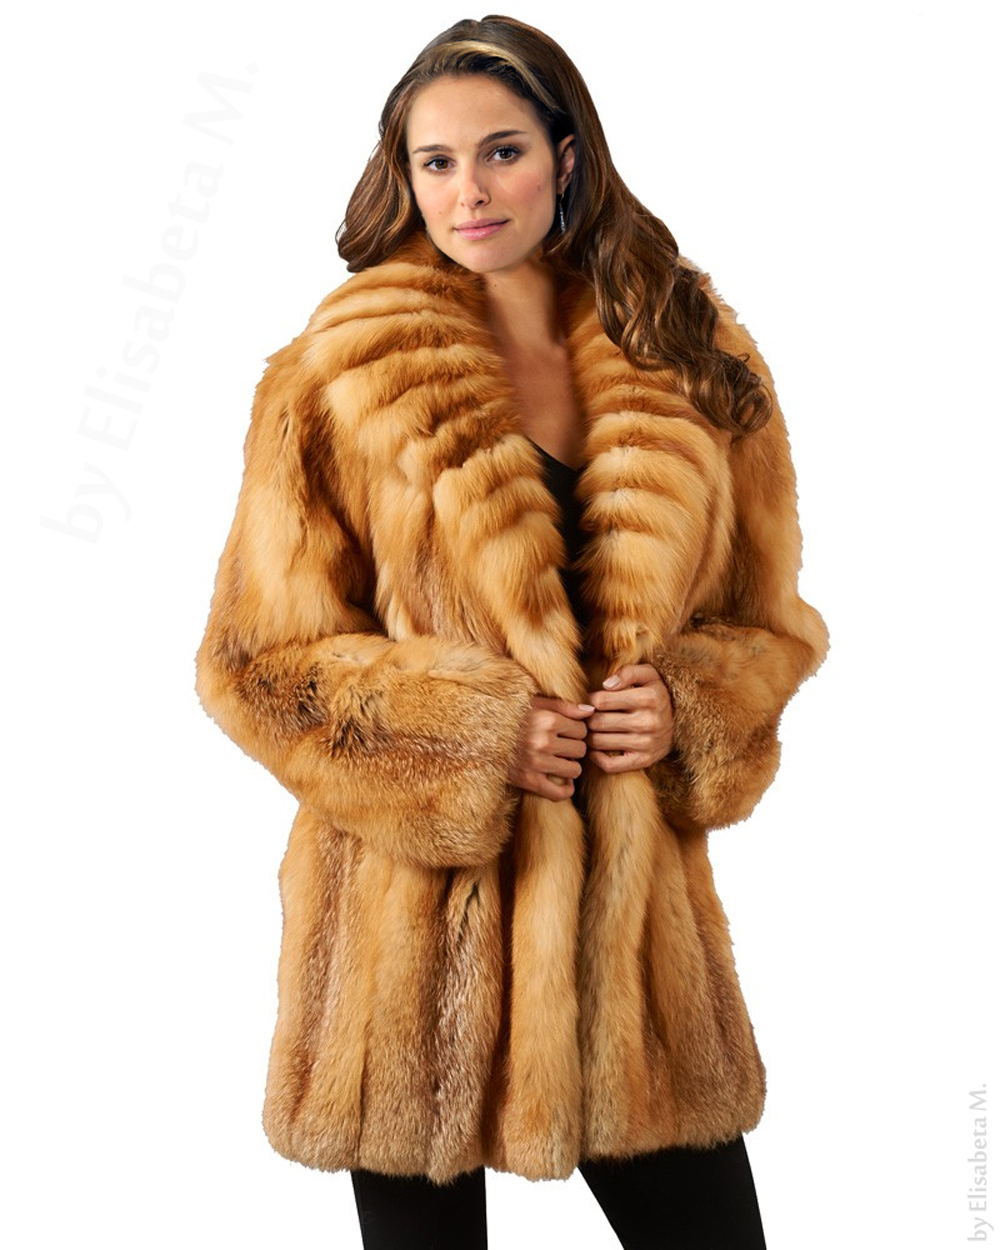 Natalie Portman fur fake 06 (fox) by ElisabetaM on DeviantArt